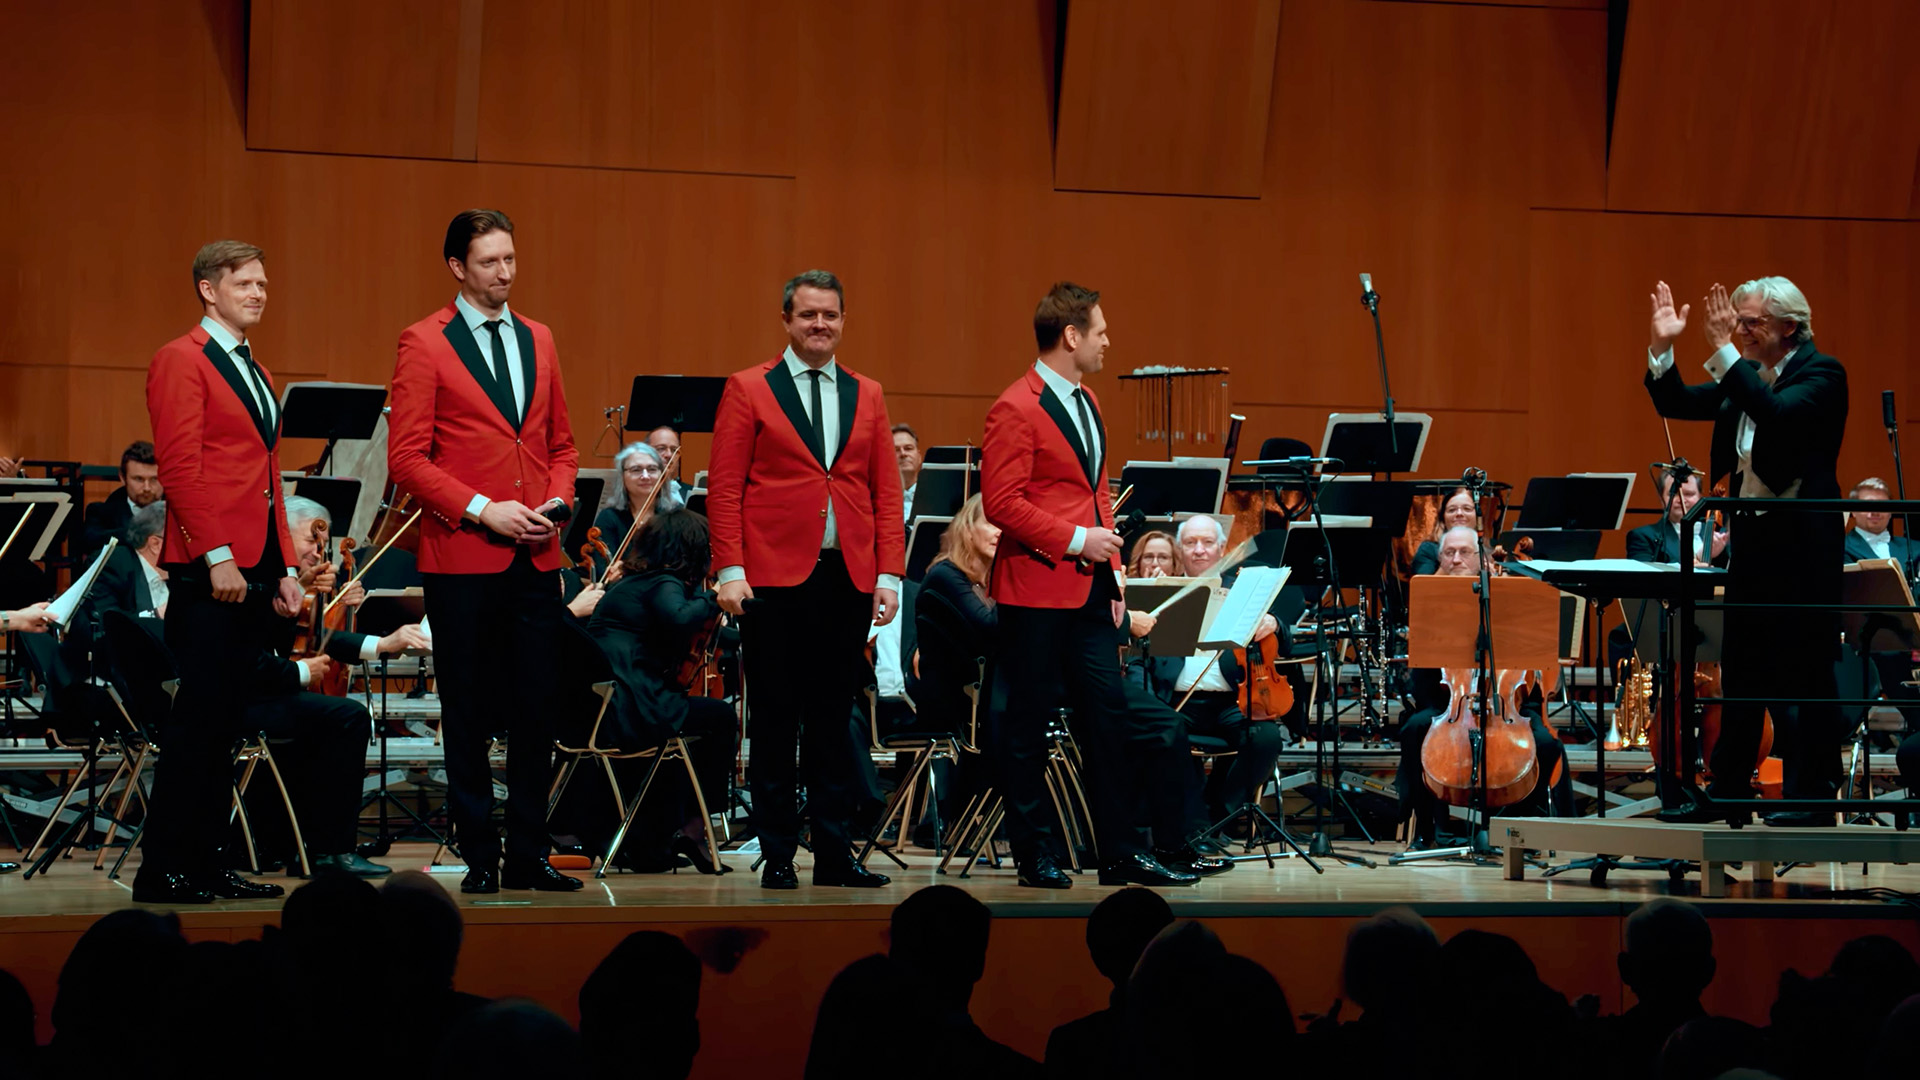 Ringmasters & Heilbronner Sinfonie Orchester – Nordische Weihnacht